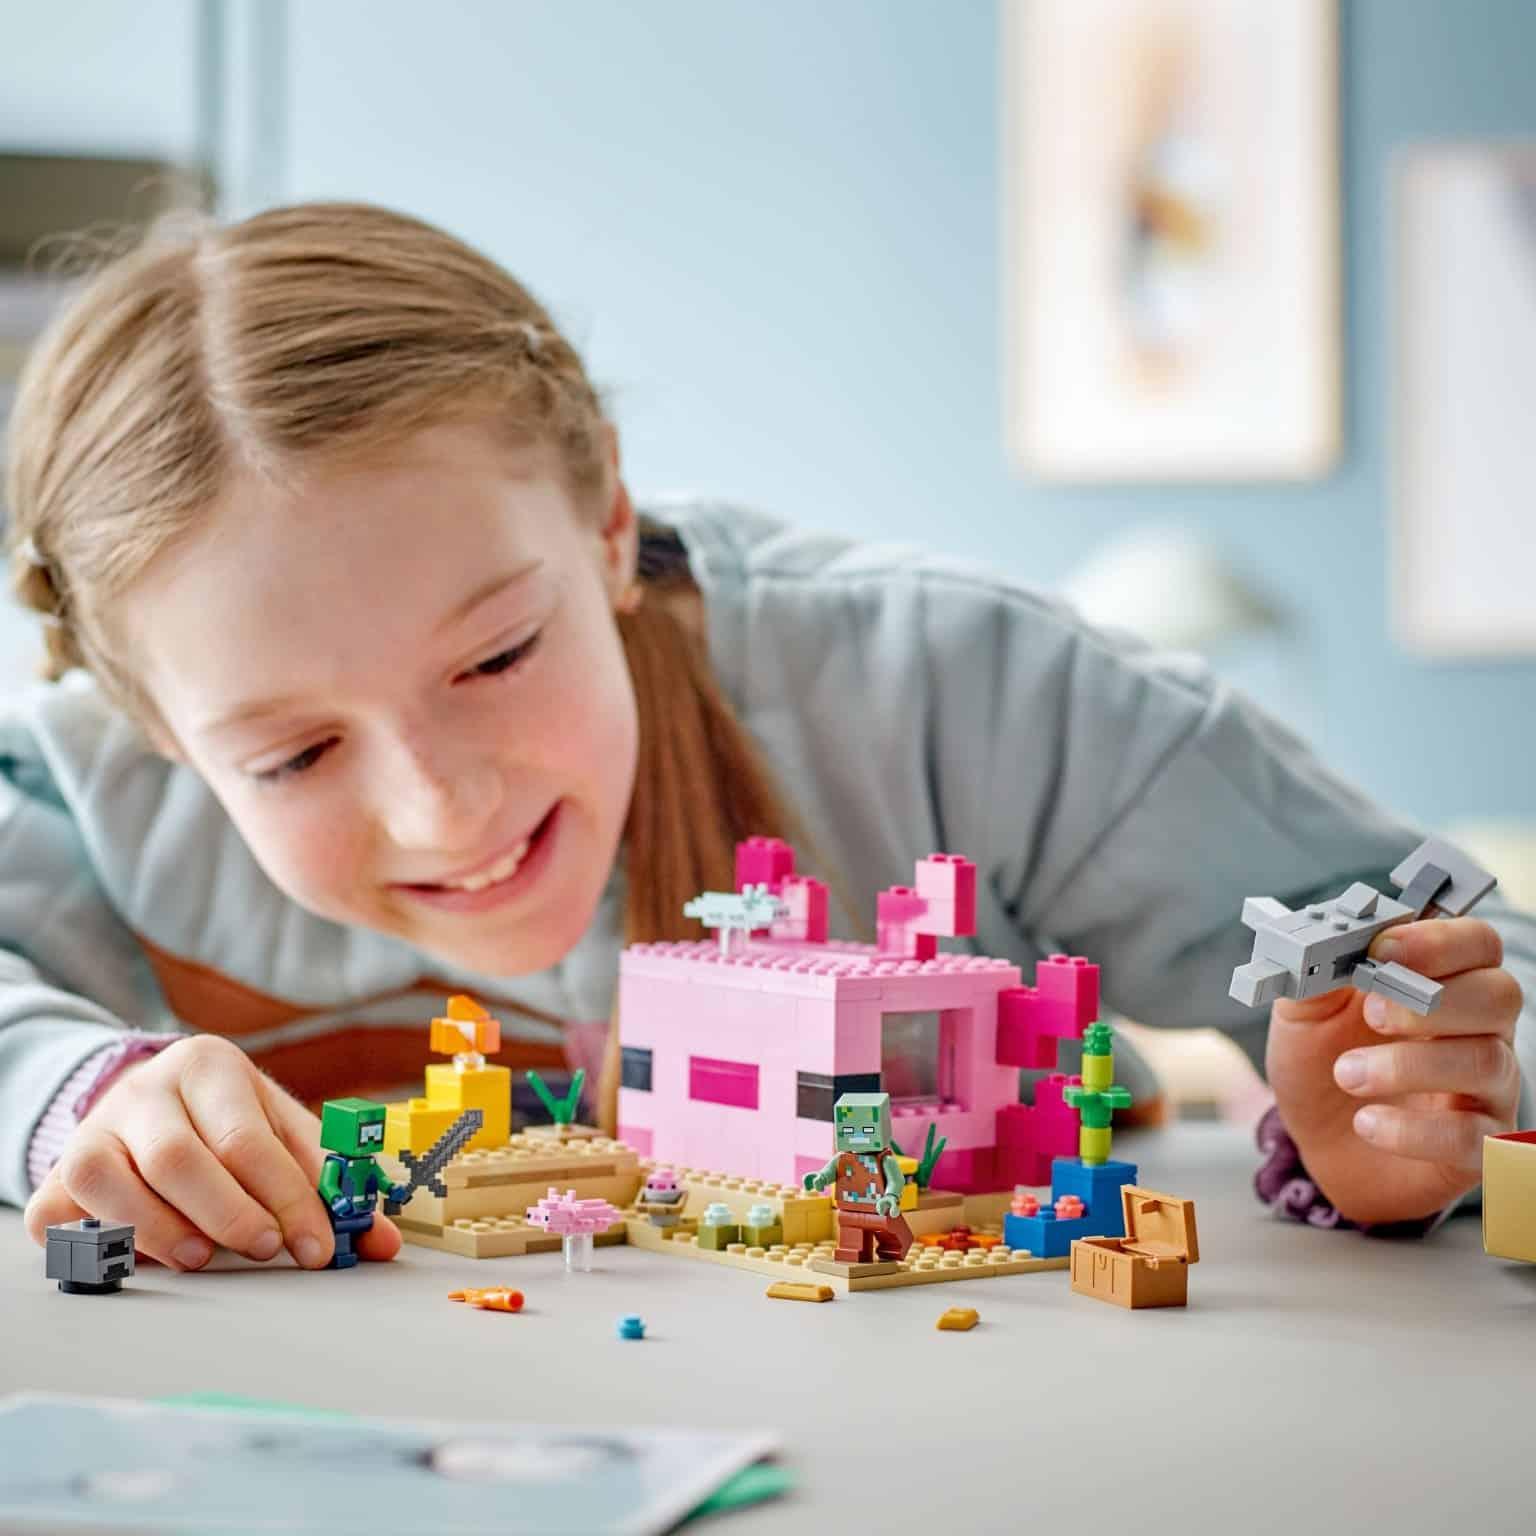 Lego Minecraft - A Casa de Axolotl - Brincatoys